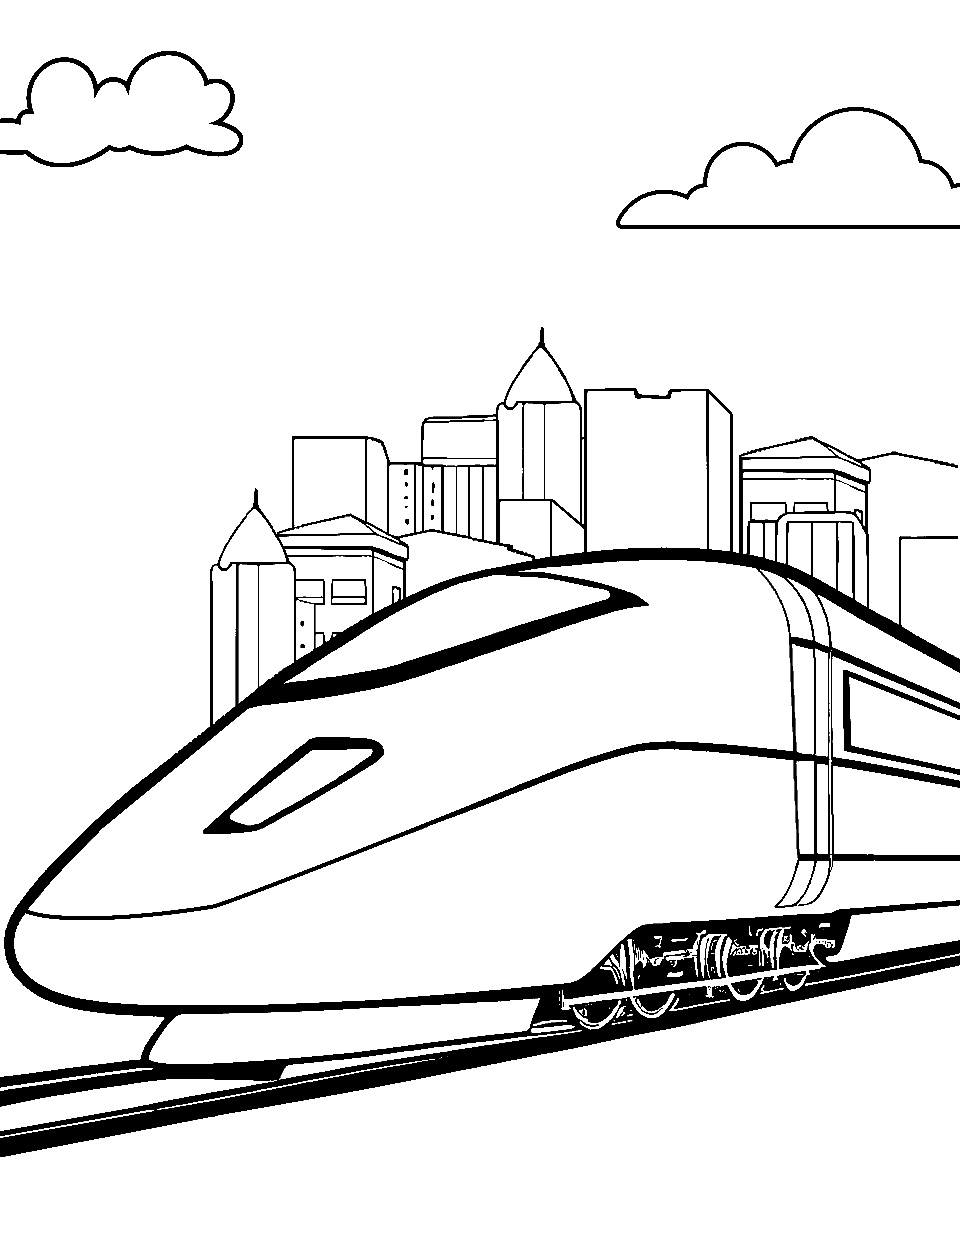 Electric City Train Coloring Page - A futuristic electric train zipping through a future city.